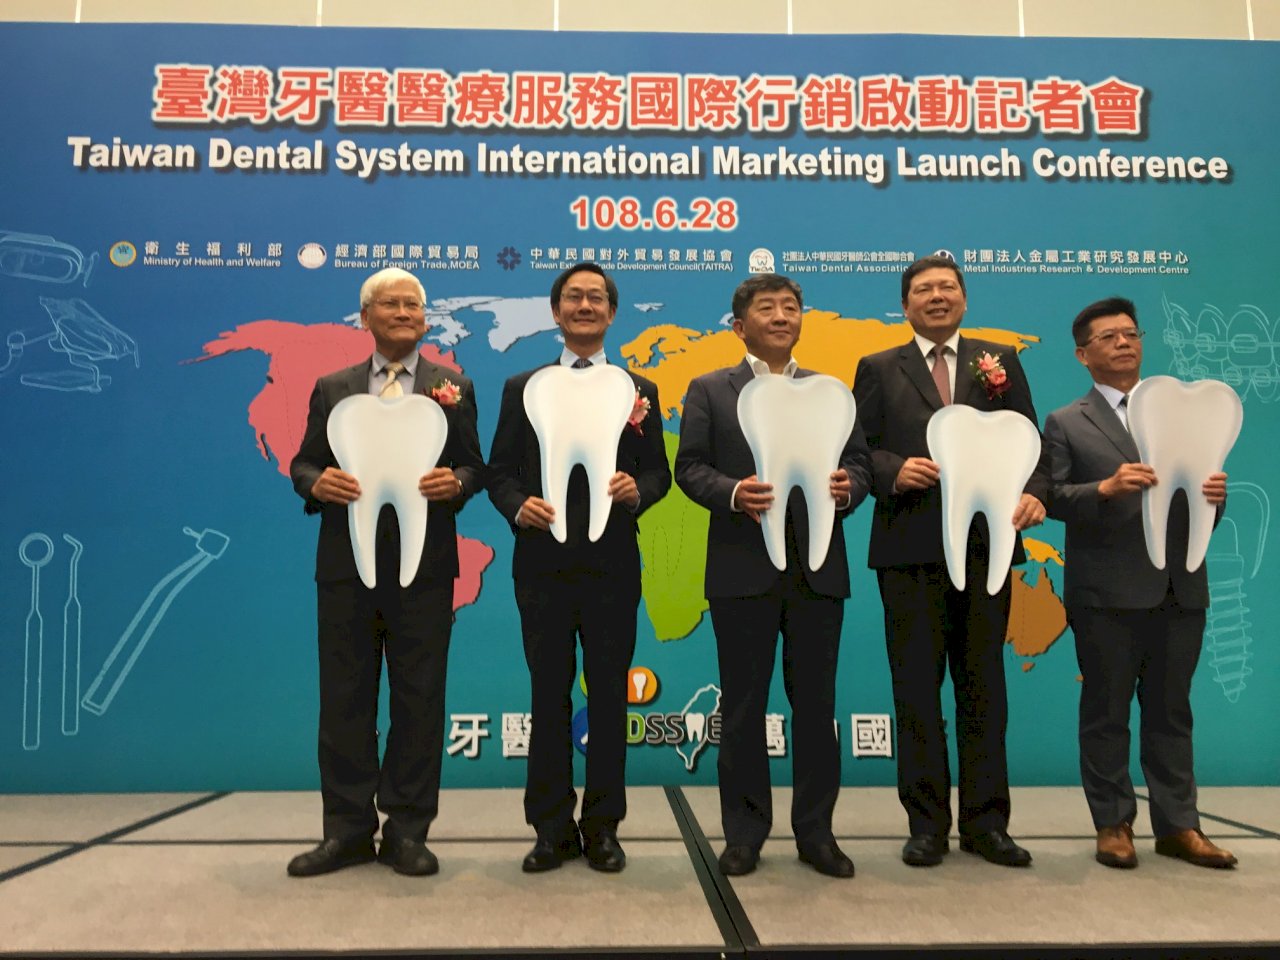 牙醫醫療國際行銷啟動 牙醫公會年底將提產業白皮書